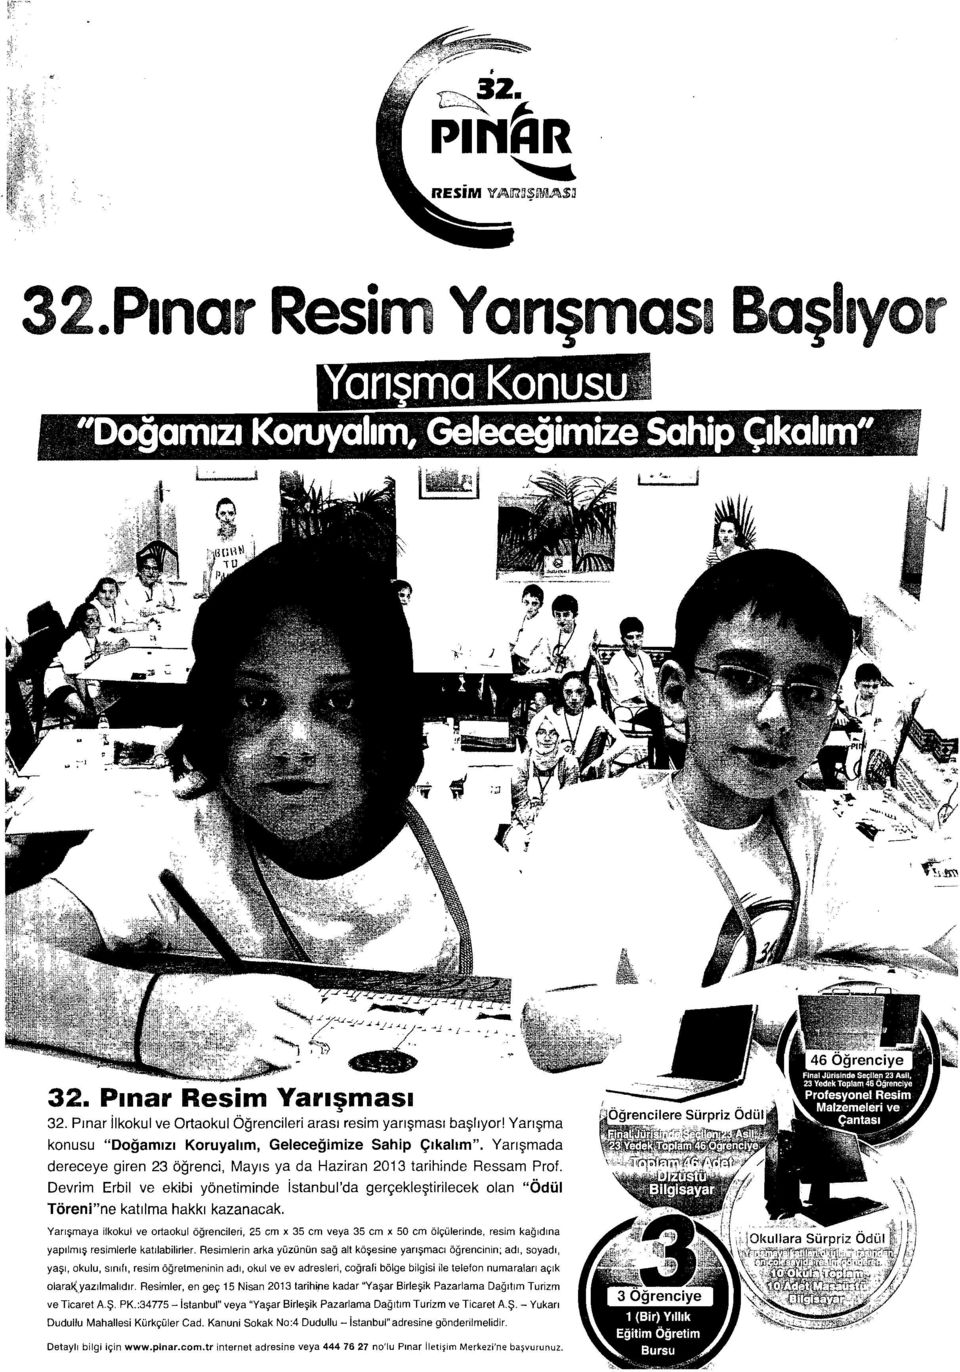 Devrim Erbil ve ekibi yönetiminde istanbul'da gerçekleştirilecek olan "Ödül Töreni"ne katılma hakkı kazanacak. Yarışmaya ilkokul ve ortaokul öğrencileri, 25 cm x 35 cm veya 35 cm x 50 cm ölçülerinde.